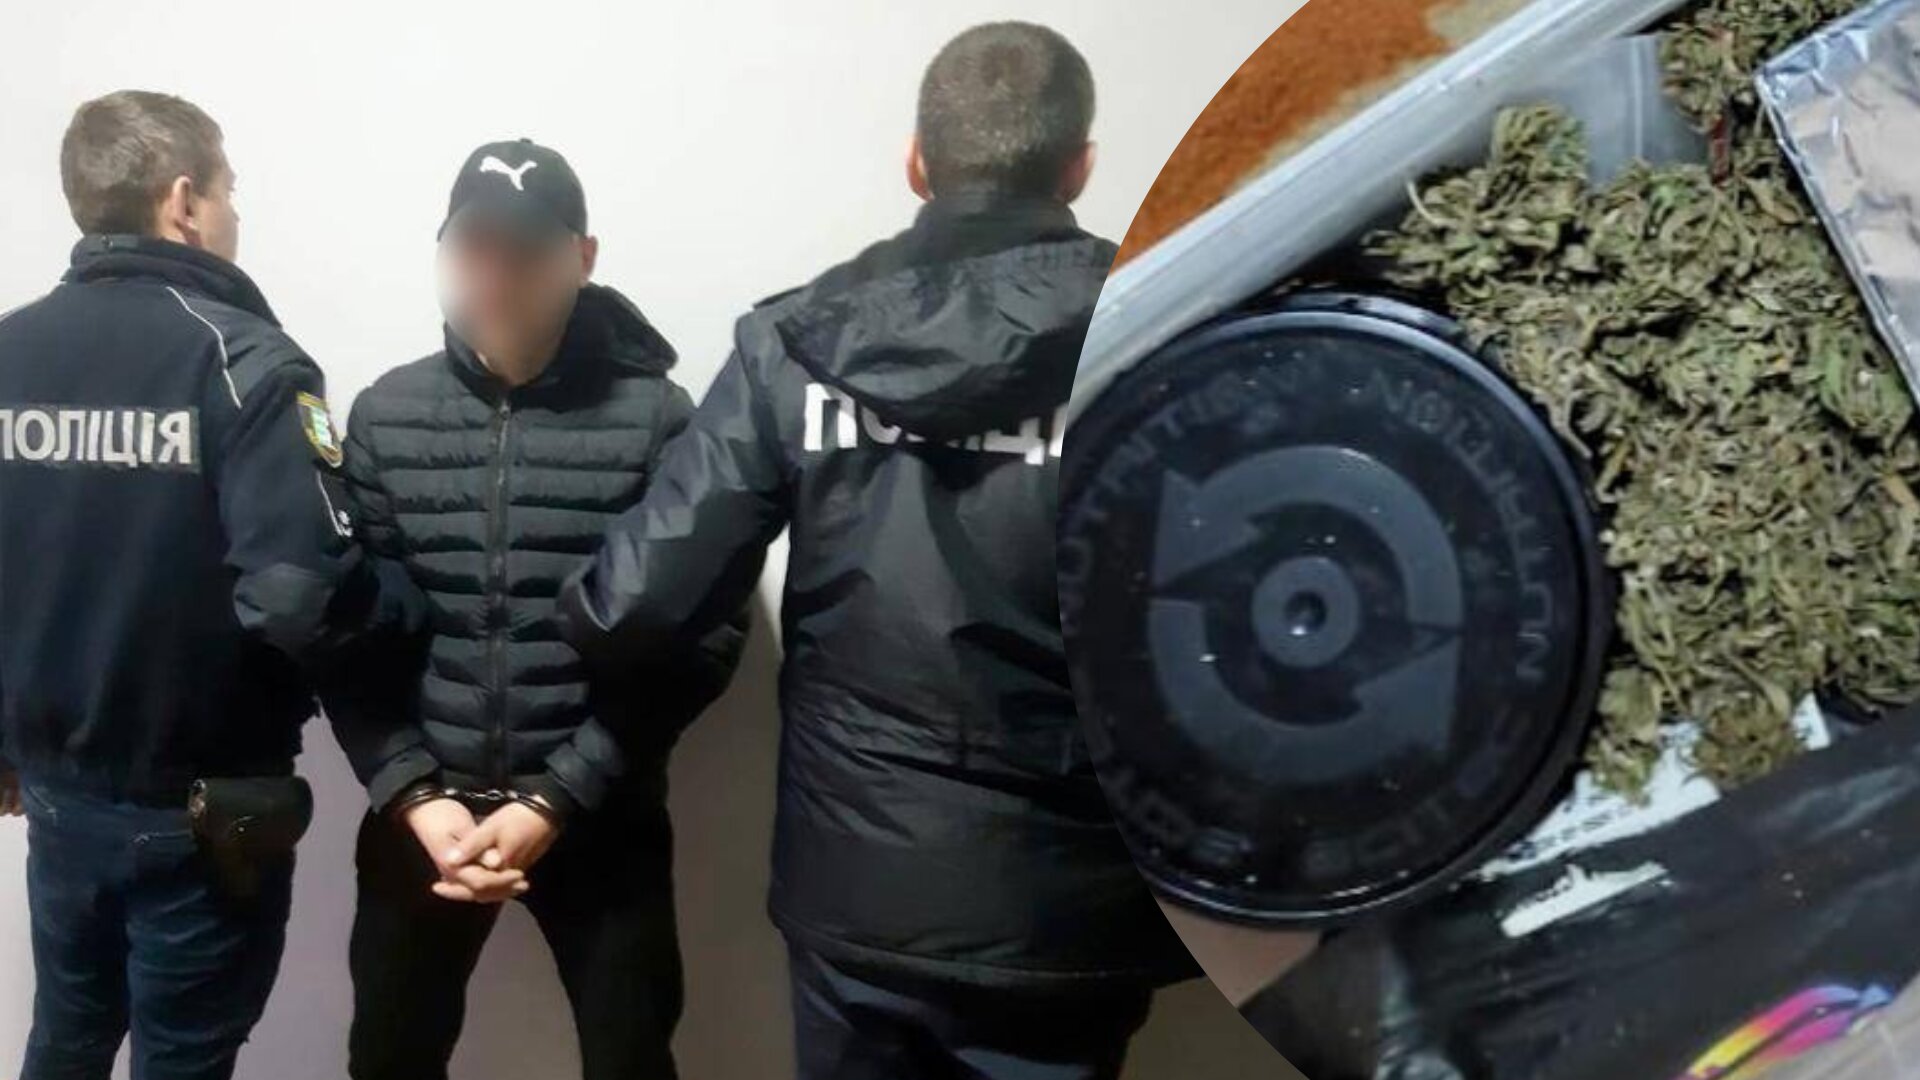 Співробітники поліції Мукачівщини затримали місцевого жителя під час збуту наркотиків рослинного походження. За місцем його проживання поліцейські провели обшук та вилучили ще ряд речових доказів. 